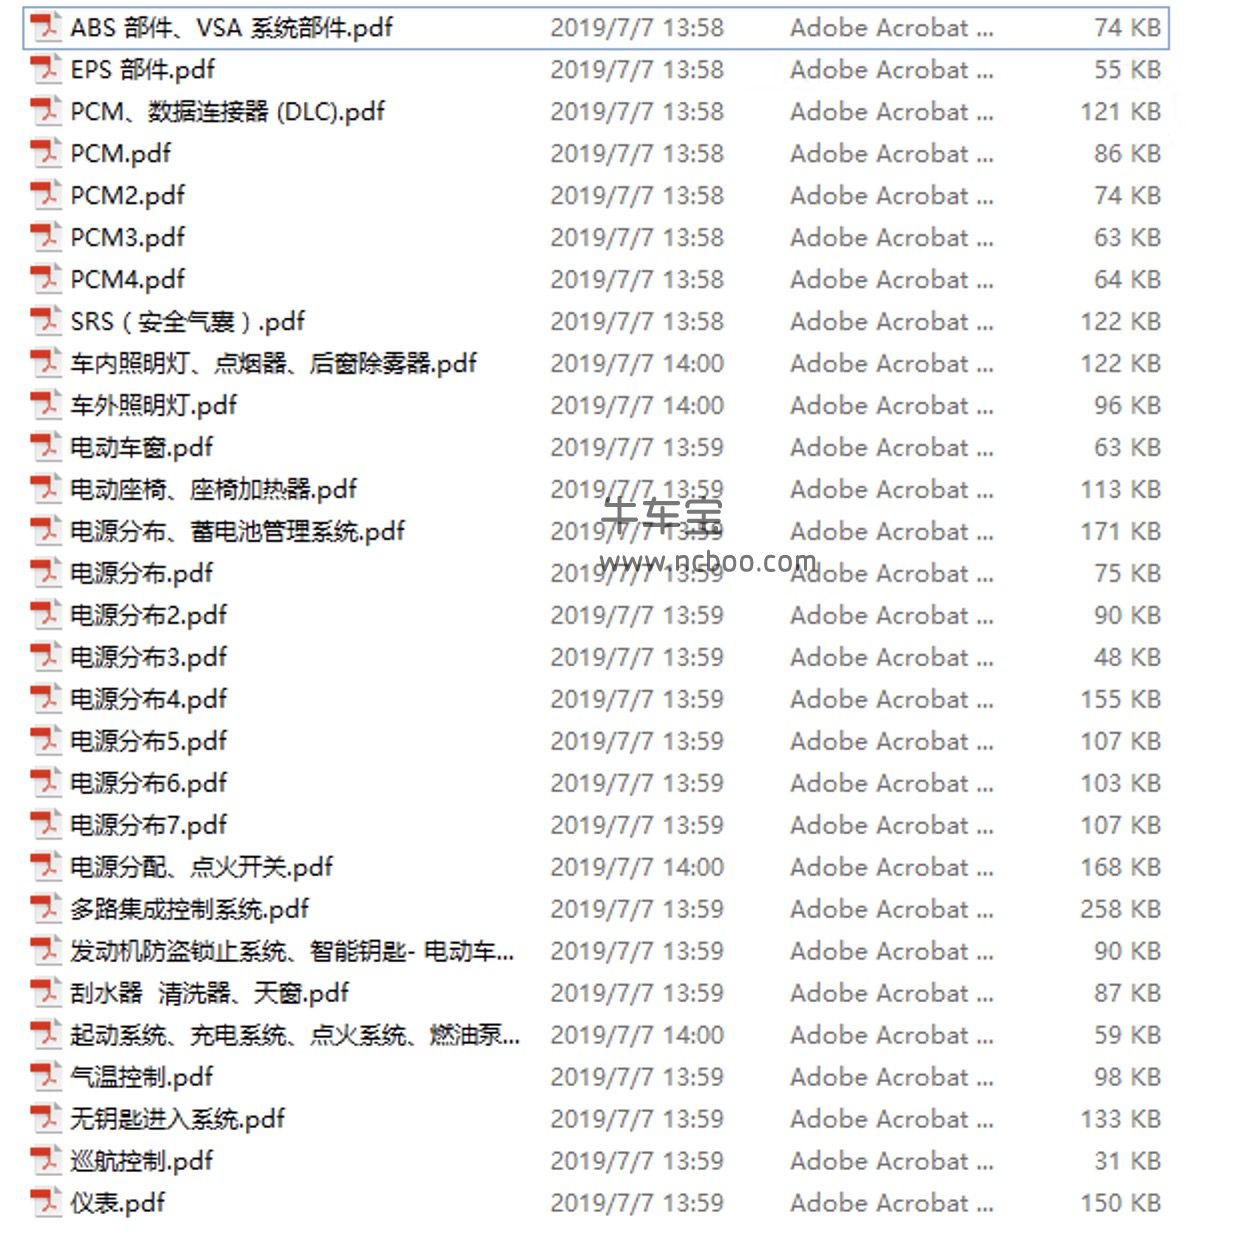 2014款东风本田杰德1.5,1.8L维修手册和电路图